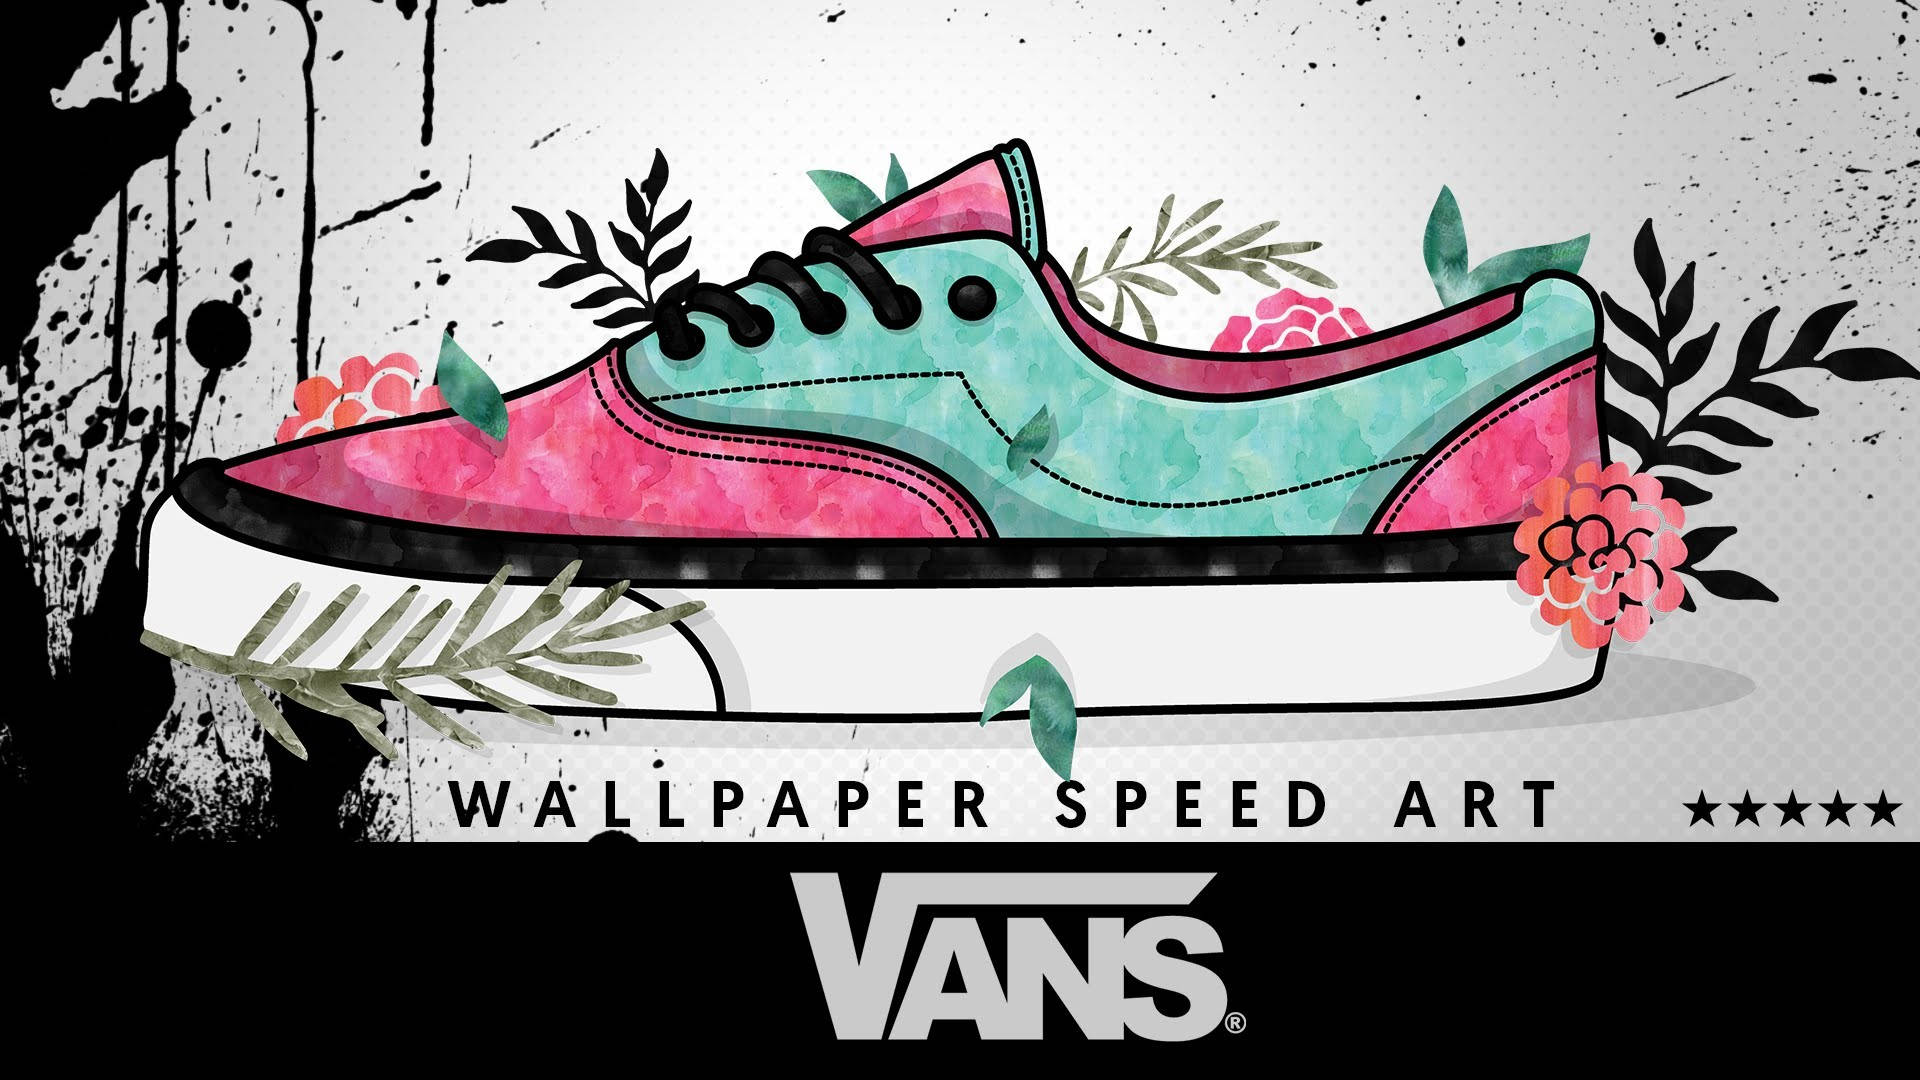 Vans Off The Wall Speed Art Wallpaper